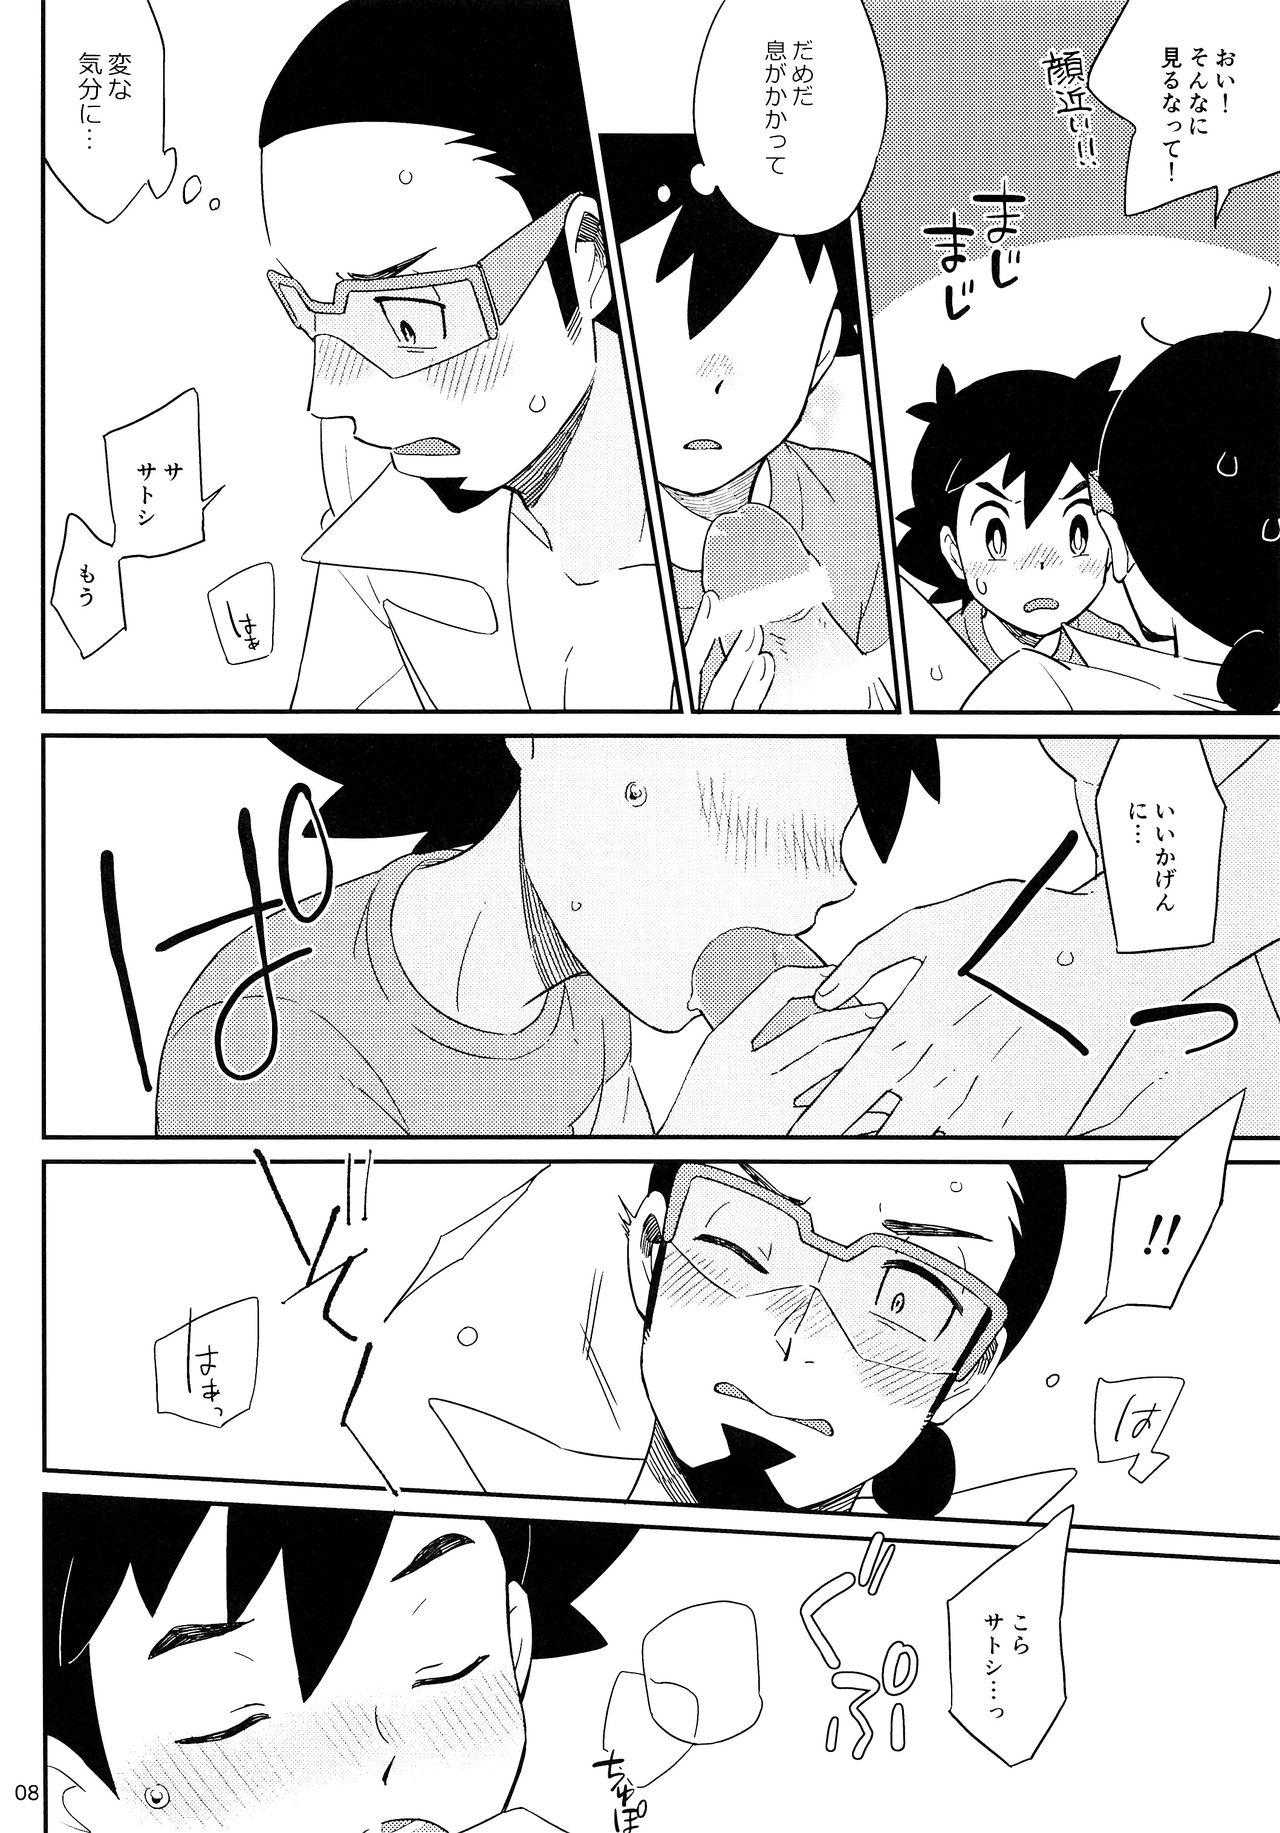 Assfingering Okaerinasai no Sono Ato wa - Pokemon Gordibuena - Page 8